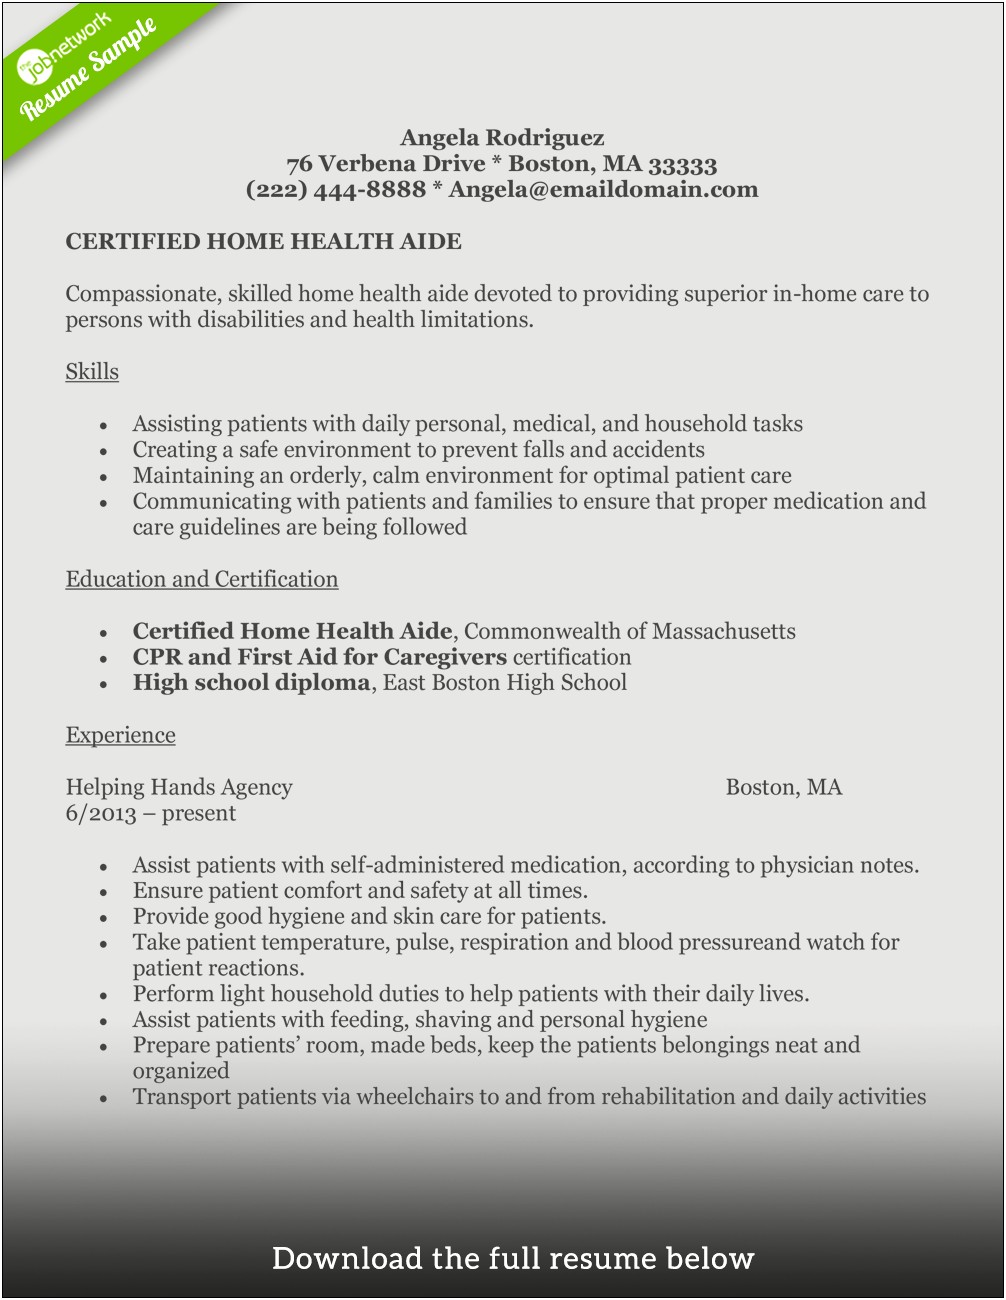 Home Care Job Description Resume